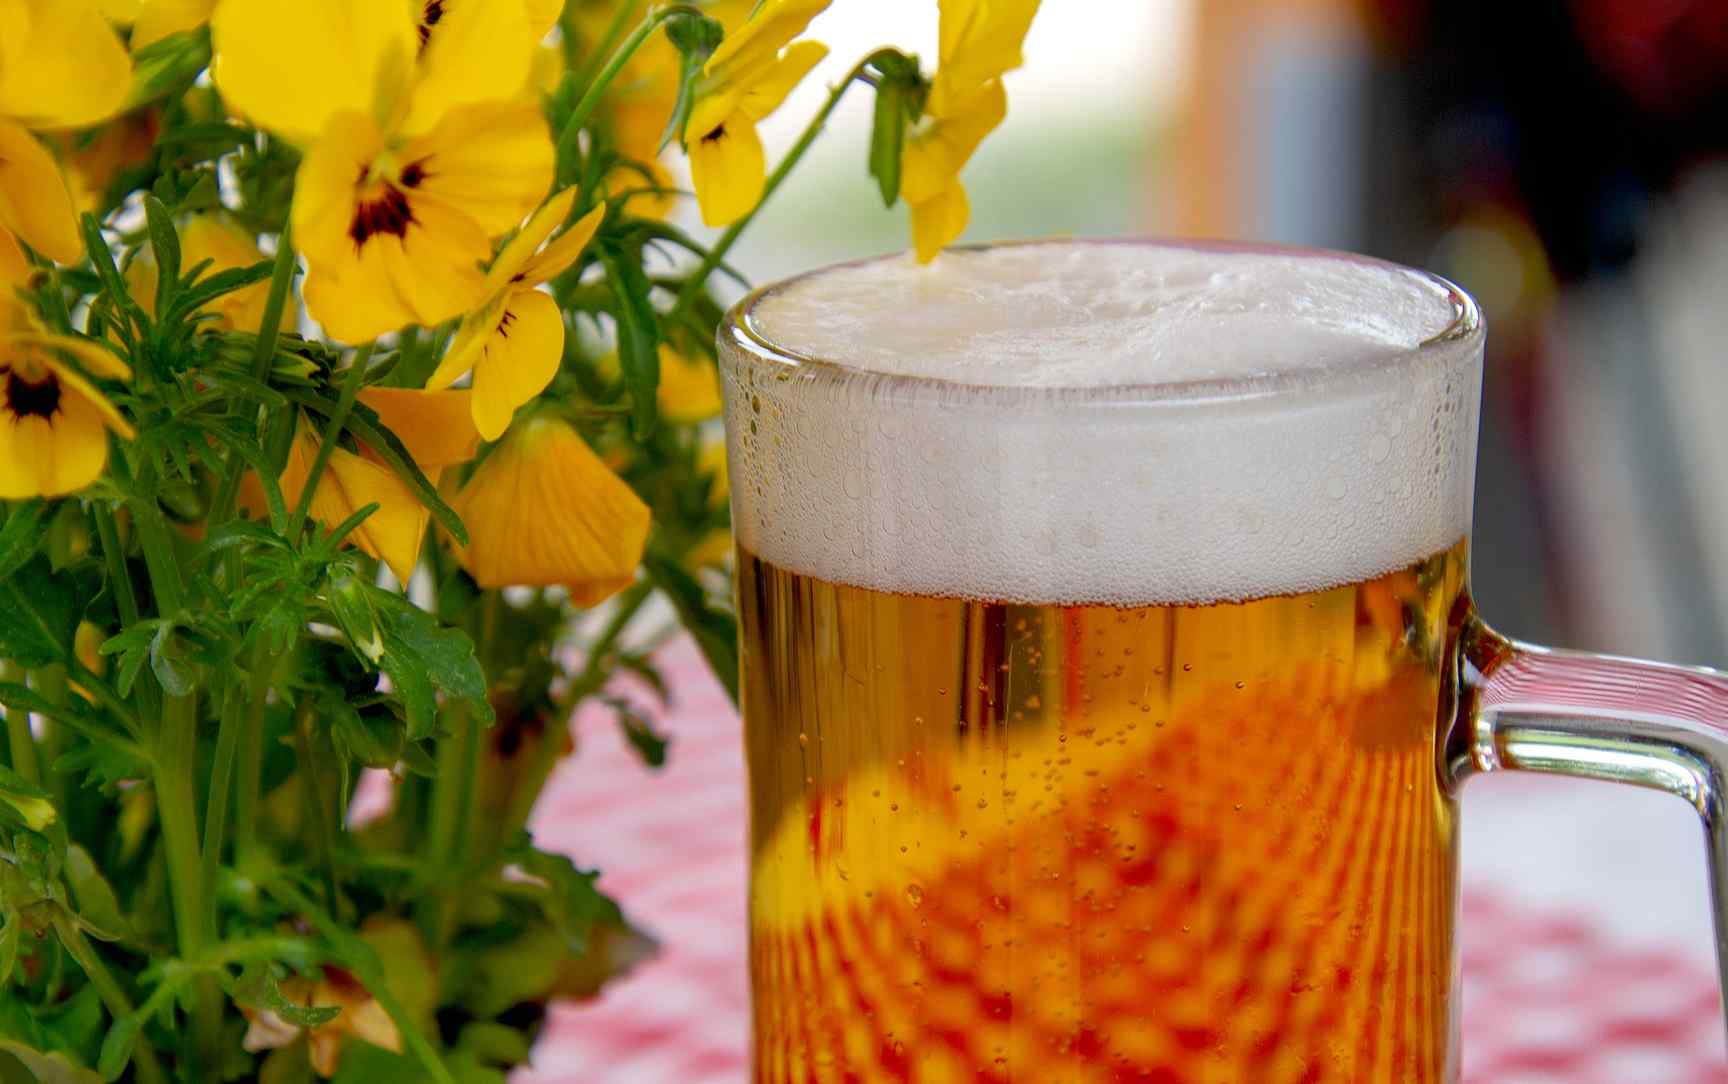 El espeluznate aviso de la OCU: cuidado con tu salud por la cerveza que compras